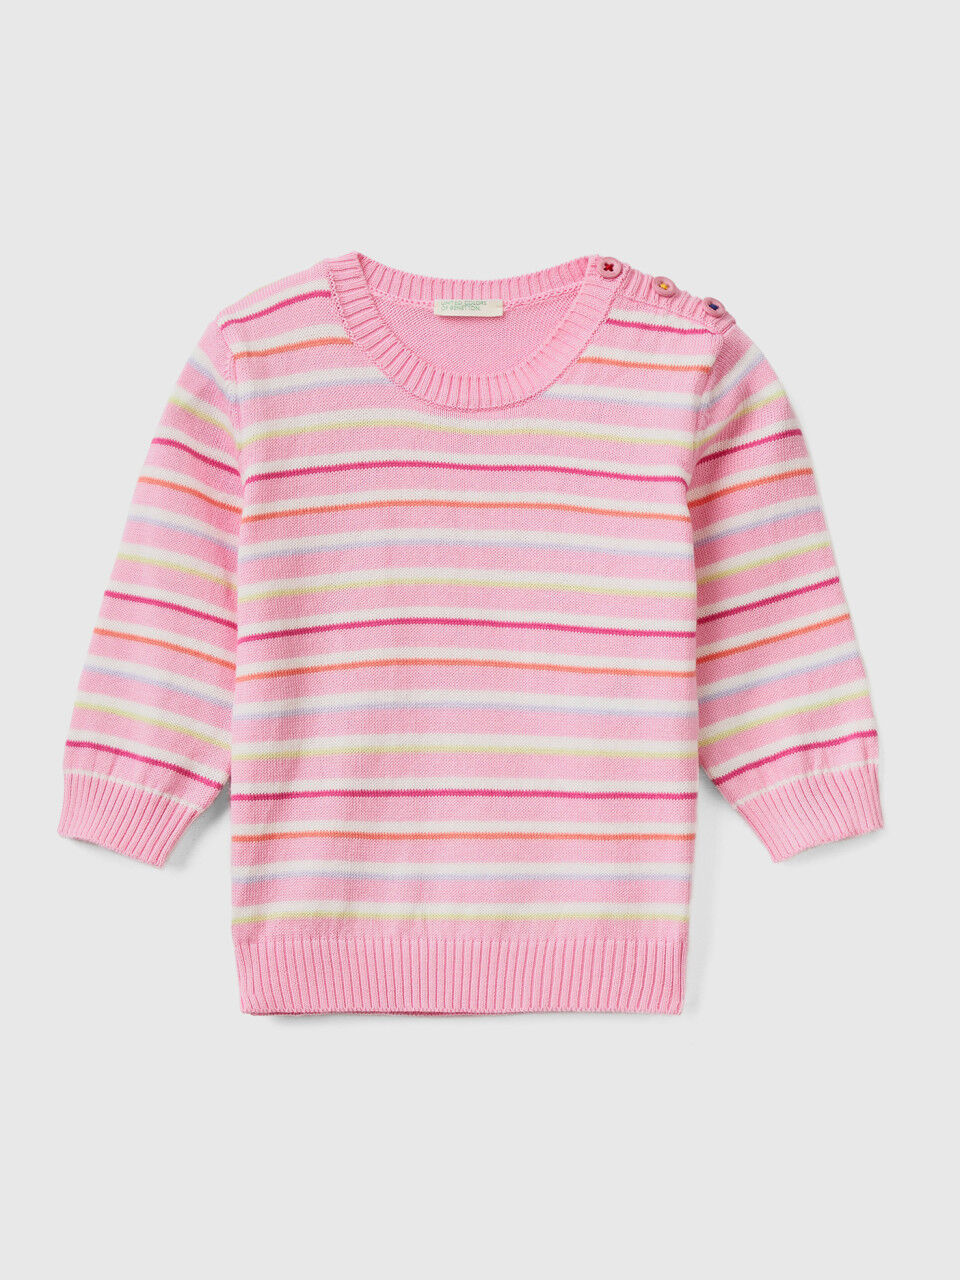 Striped sweater in pure cotton